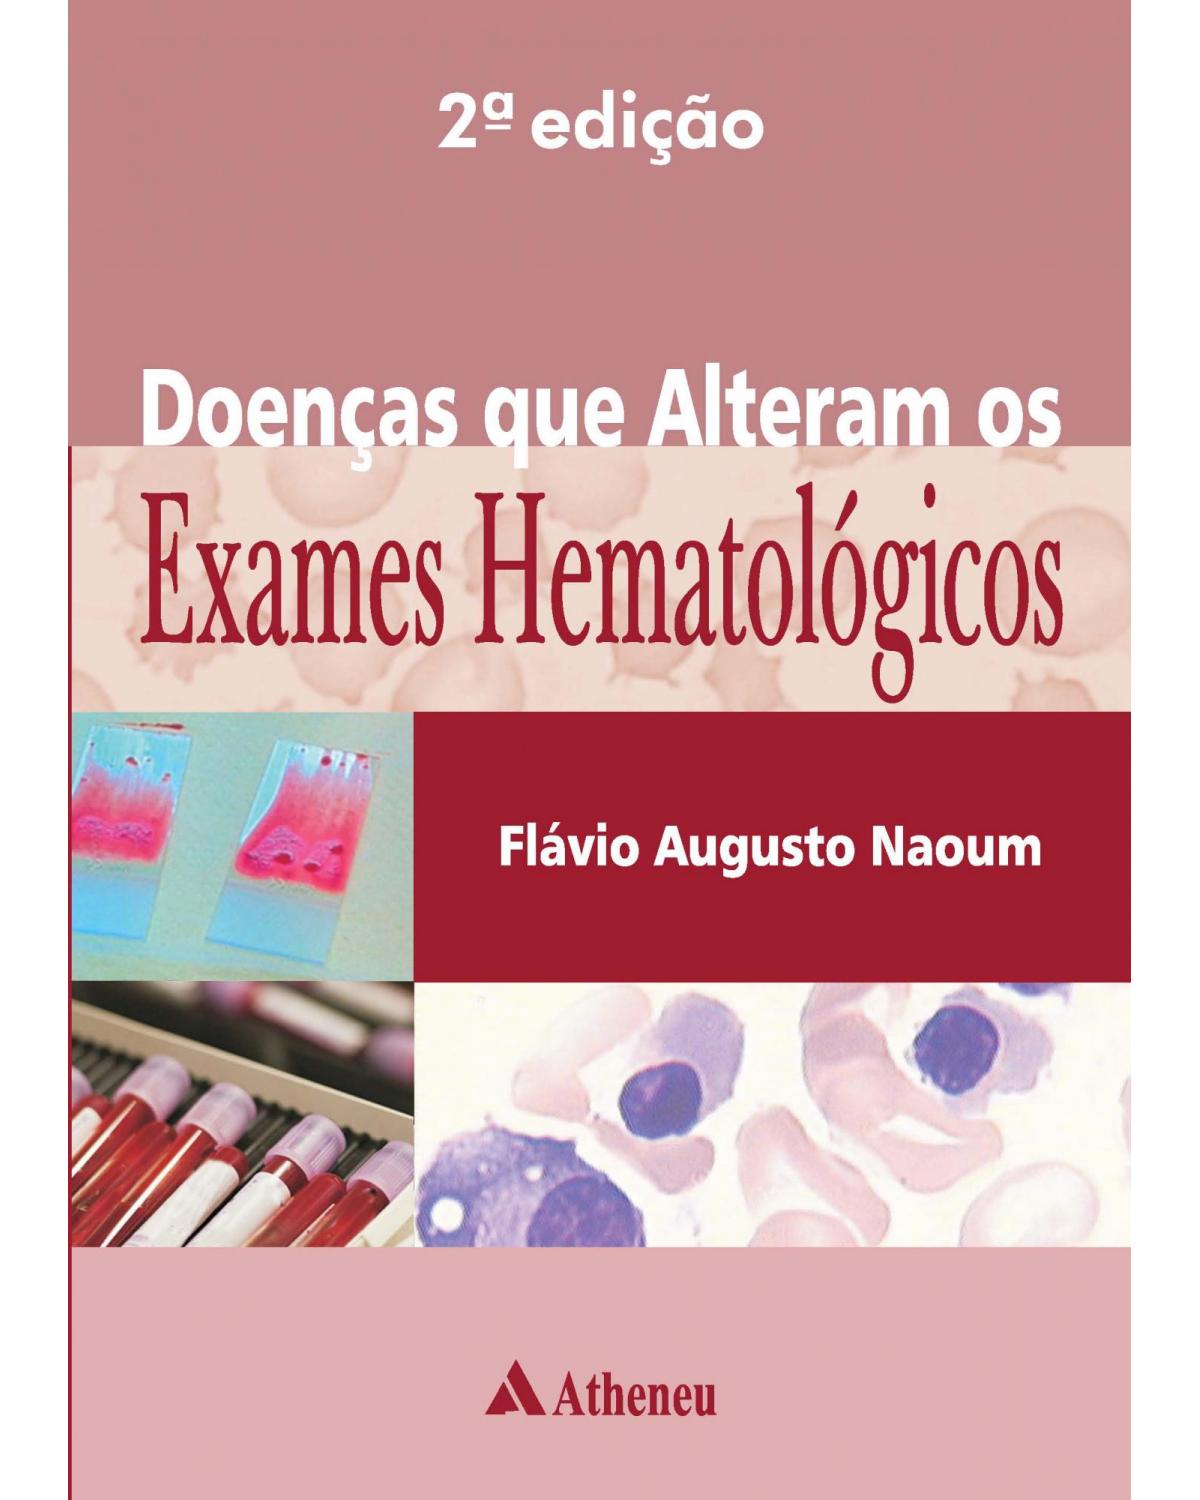 Doenças que alteram os exames hematoloógicos - 2ª Edição | 2017